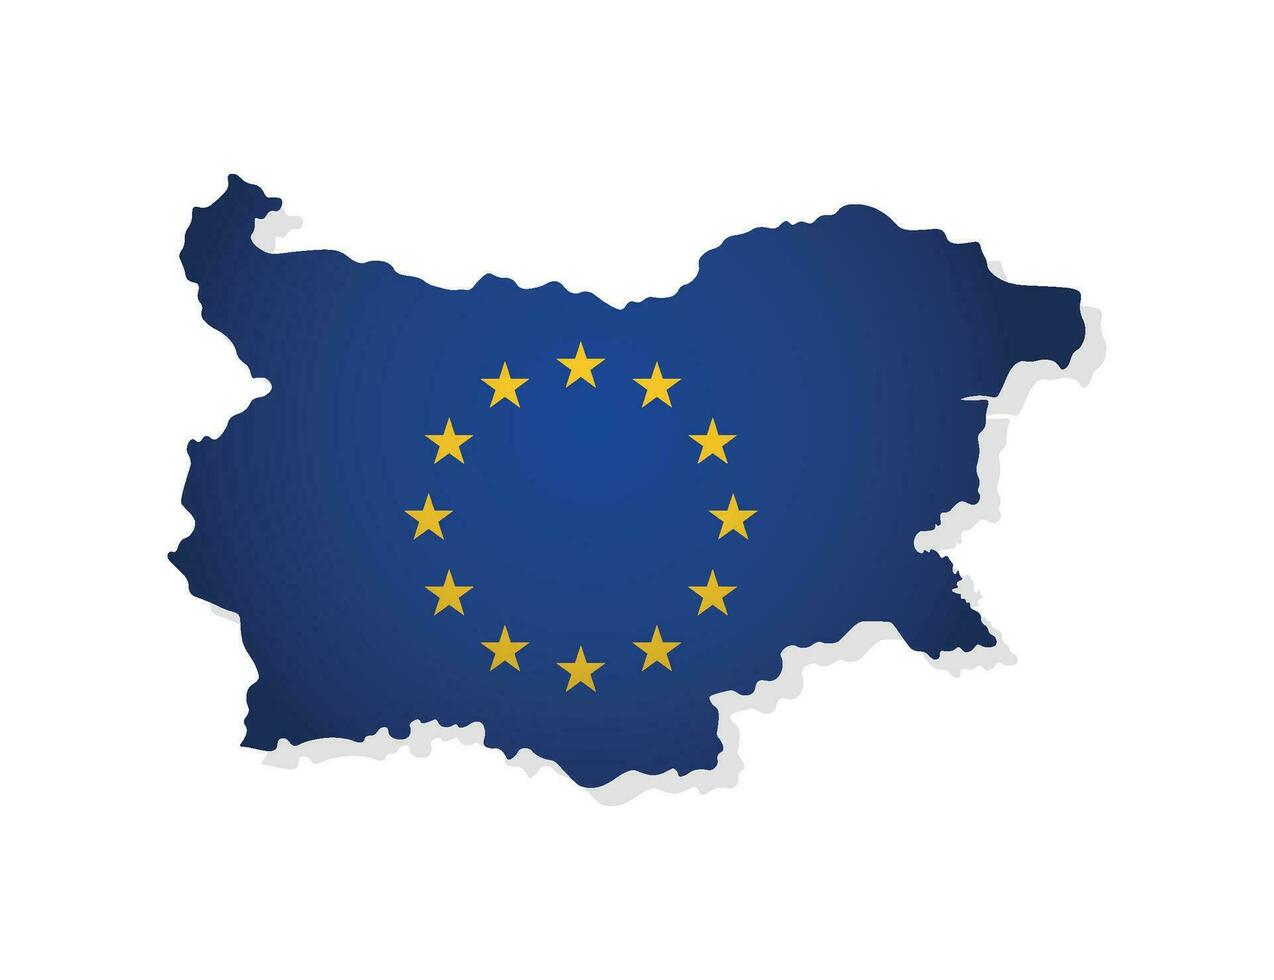 vecteur illustration avec isolé carte de membre de européen syndicat - Bulgarie. concept décoré par le UE drapeau avec or étoiles sur bleu Contexte. moderne conception